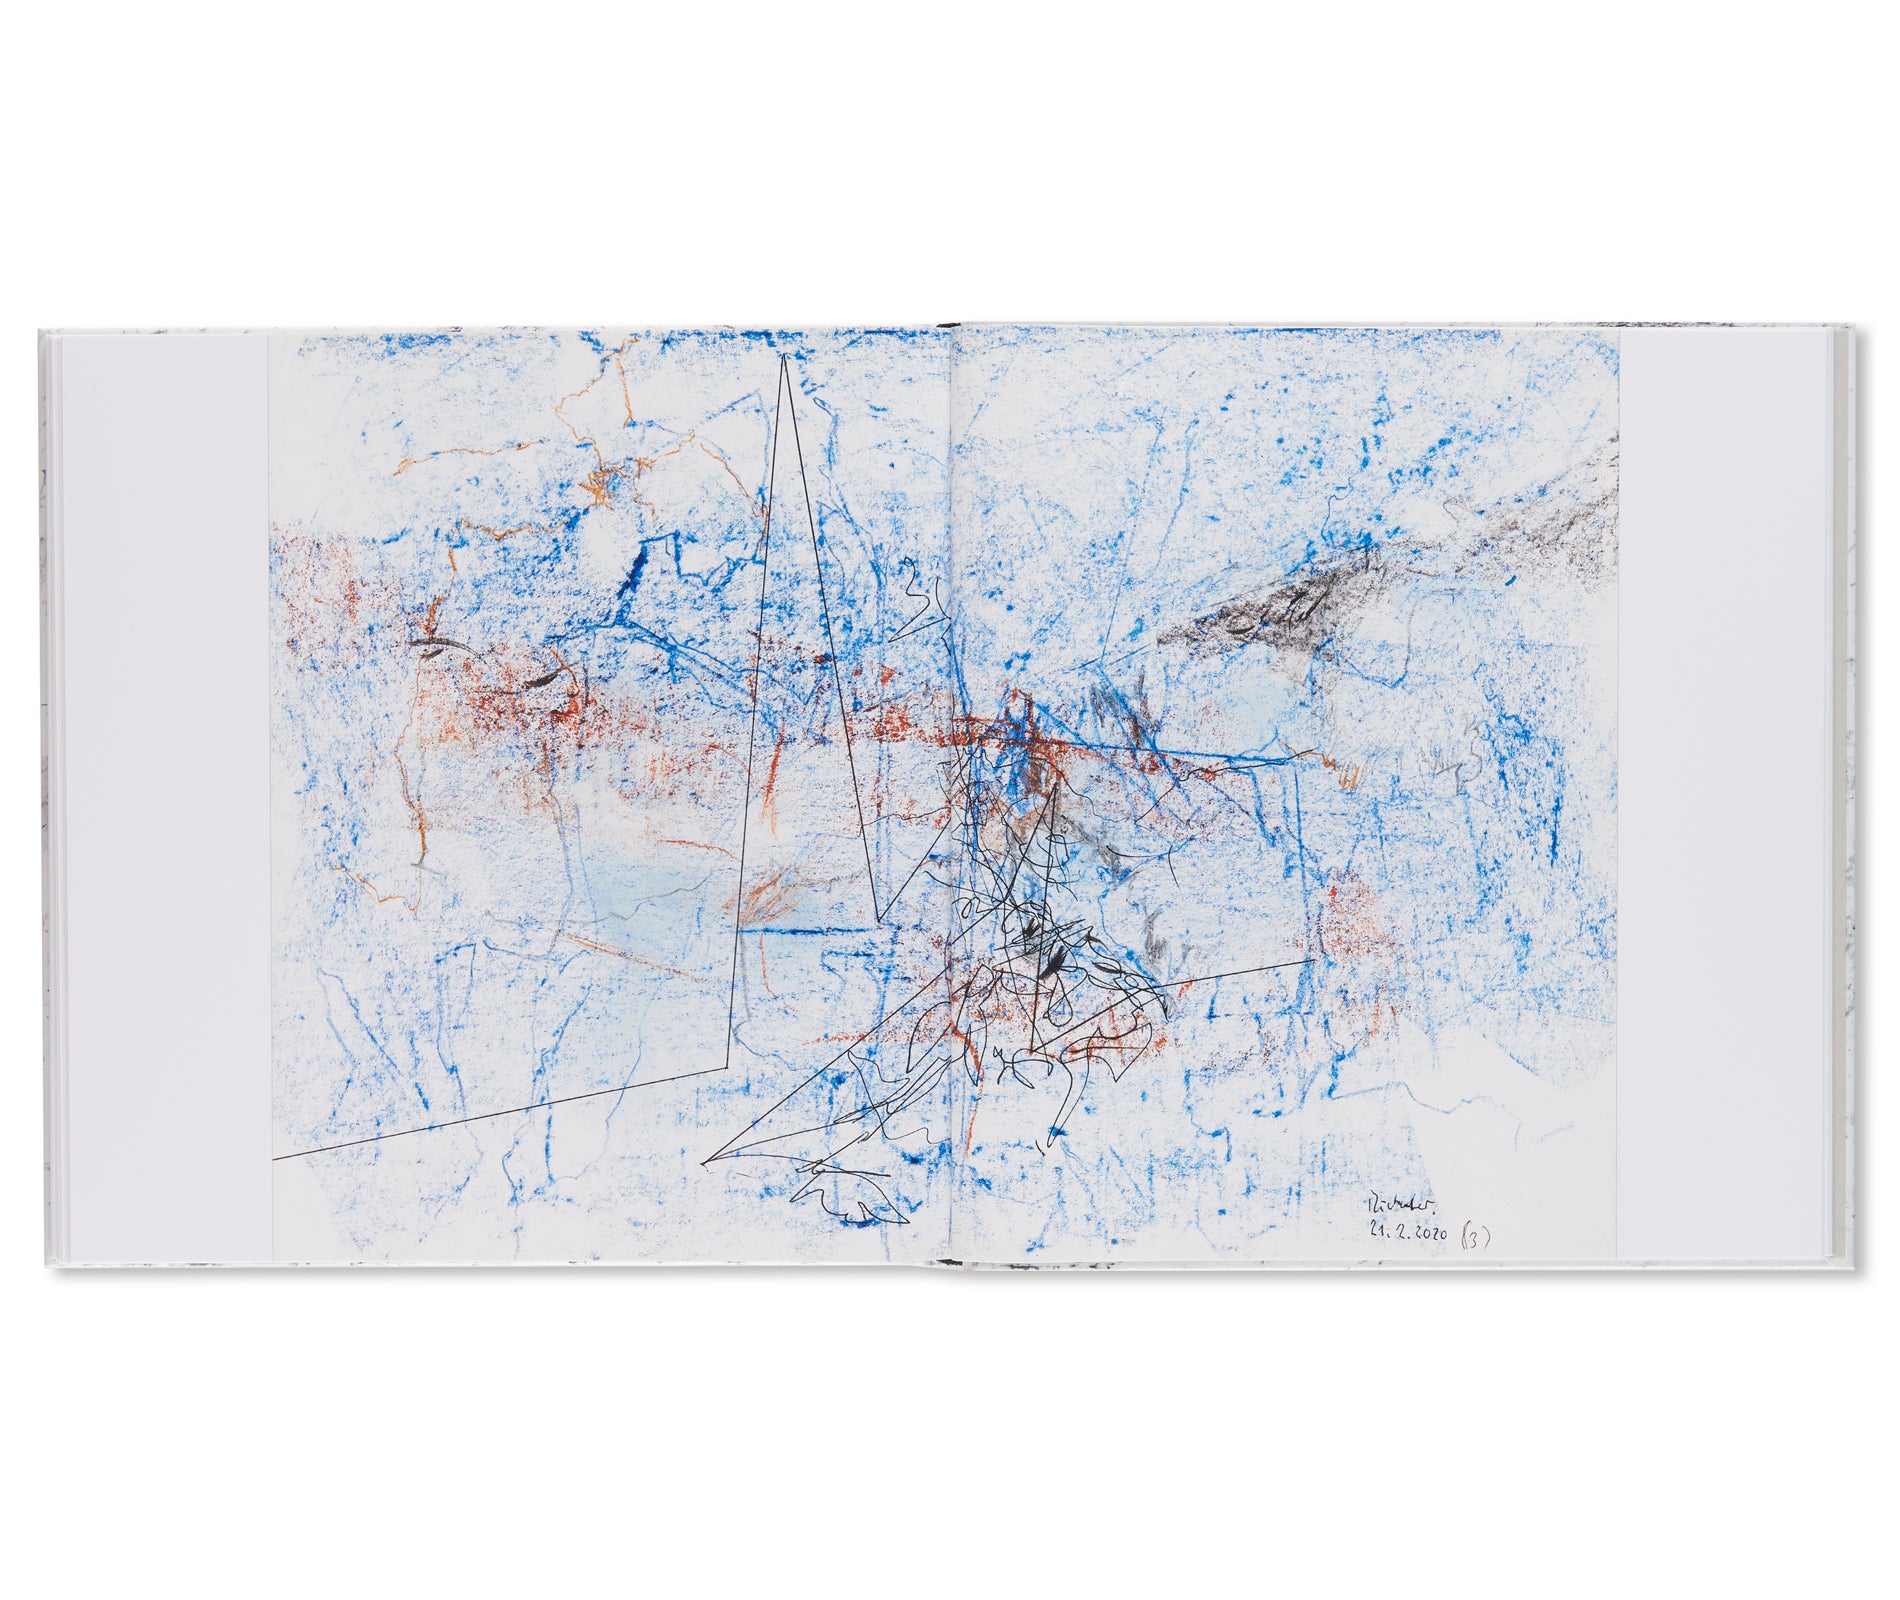 92 ZEICHNUNGEN / 92 DRAWINGS by Gerhard Richter